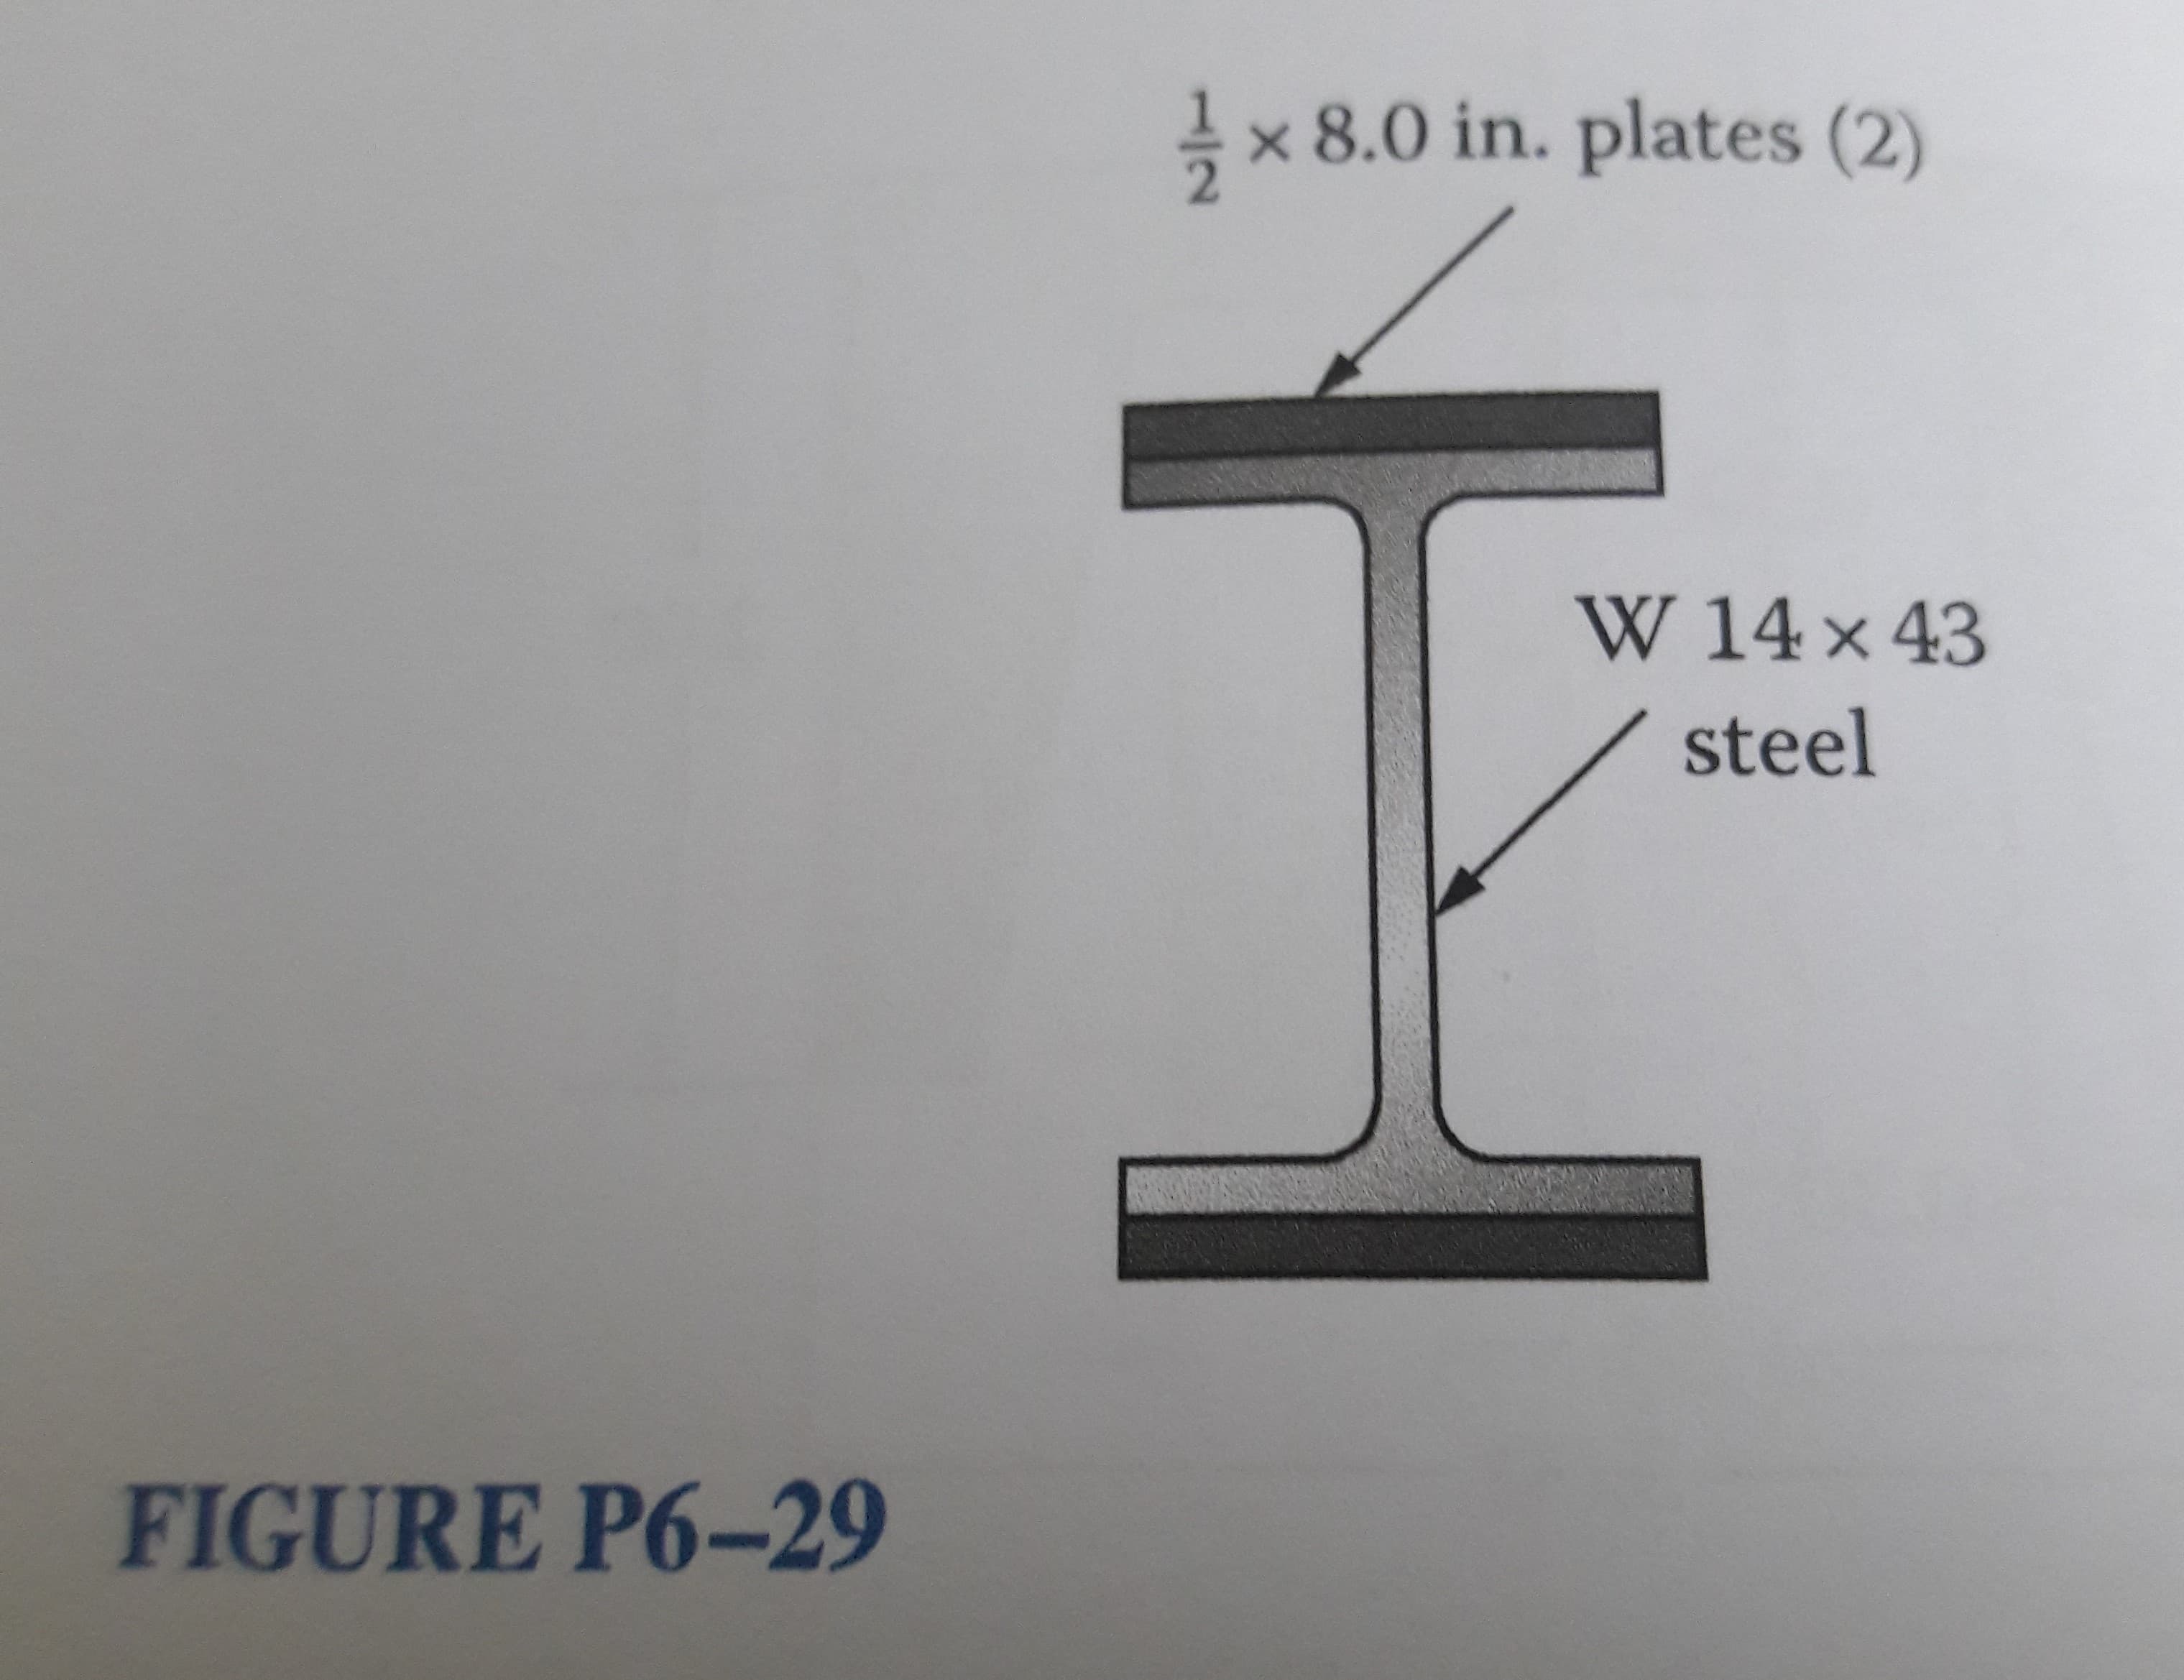 × 8.0 in. plates (2)
W 14 x 43
steel
FIGURE P6-29
1/2
